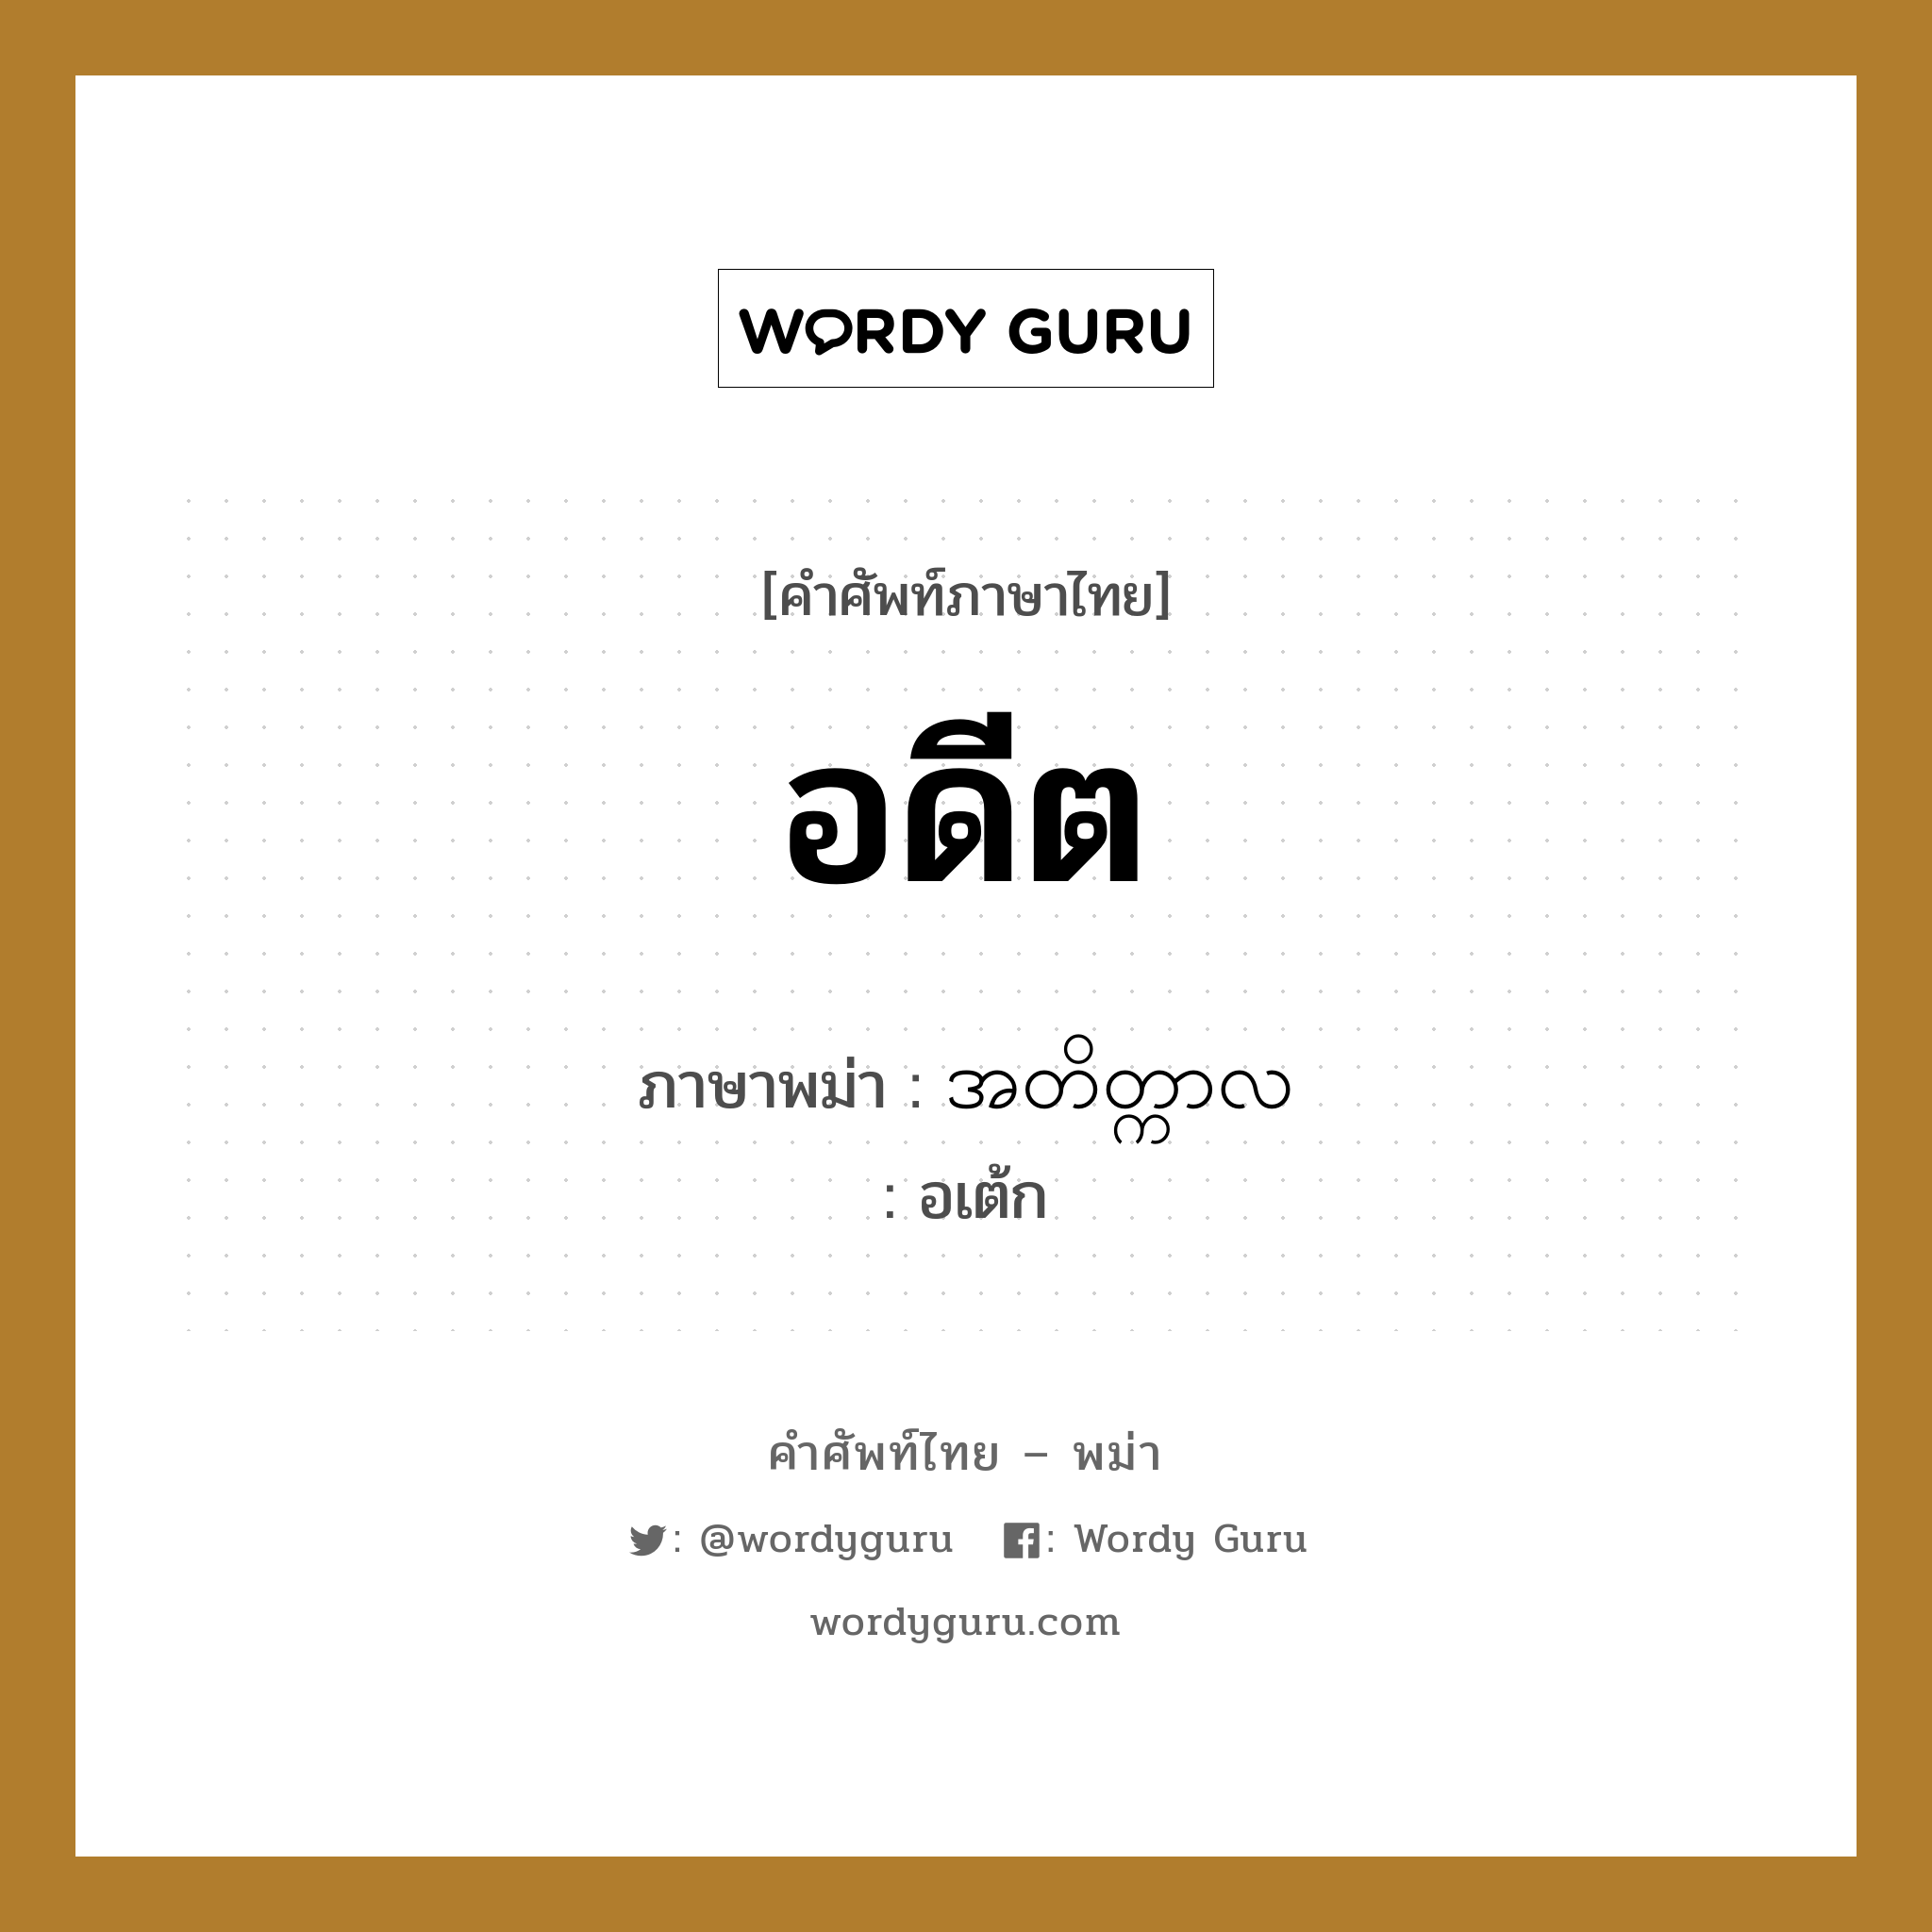 อดีต ภาษาพม่าคืออะไร, คำศัพท์ภาษาไทย - พม่า อดีต ภาษาพม่า အတိတ္ကာလ หมวด หมวดวัน เดือน ปี อเต้ก หมวด หมวดวัน เดือน ปี